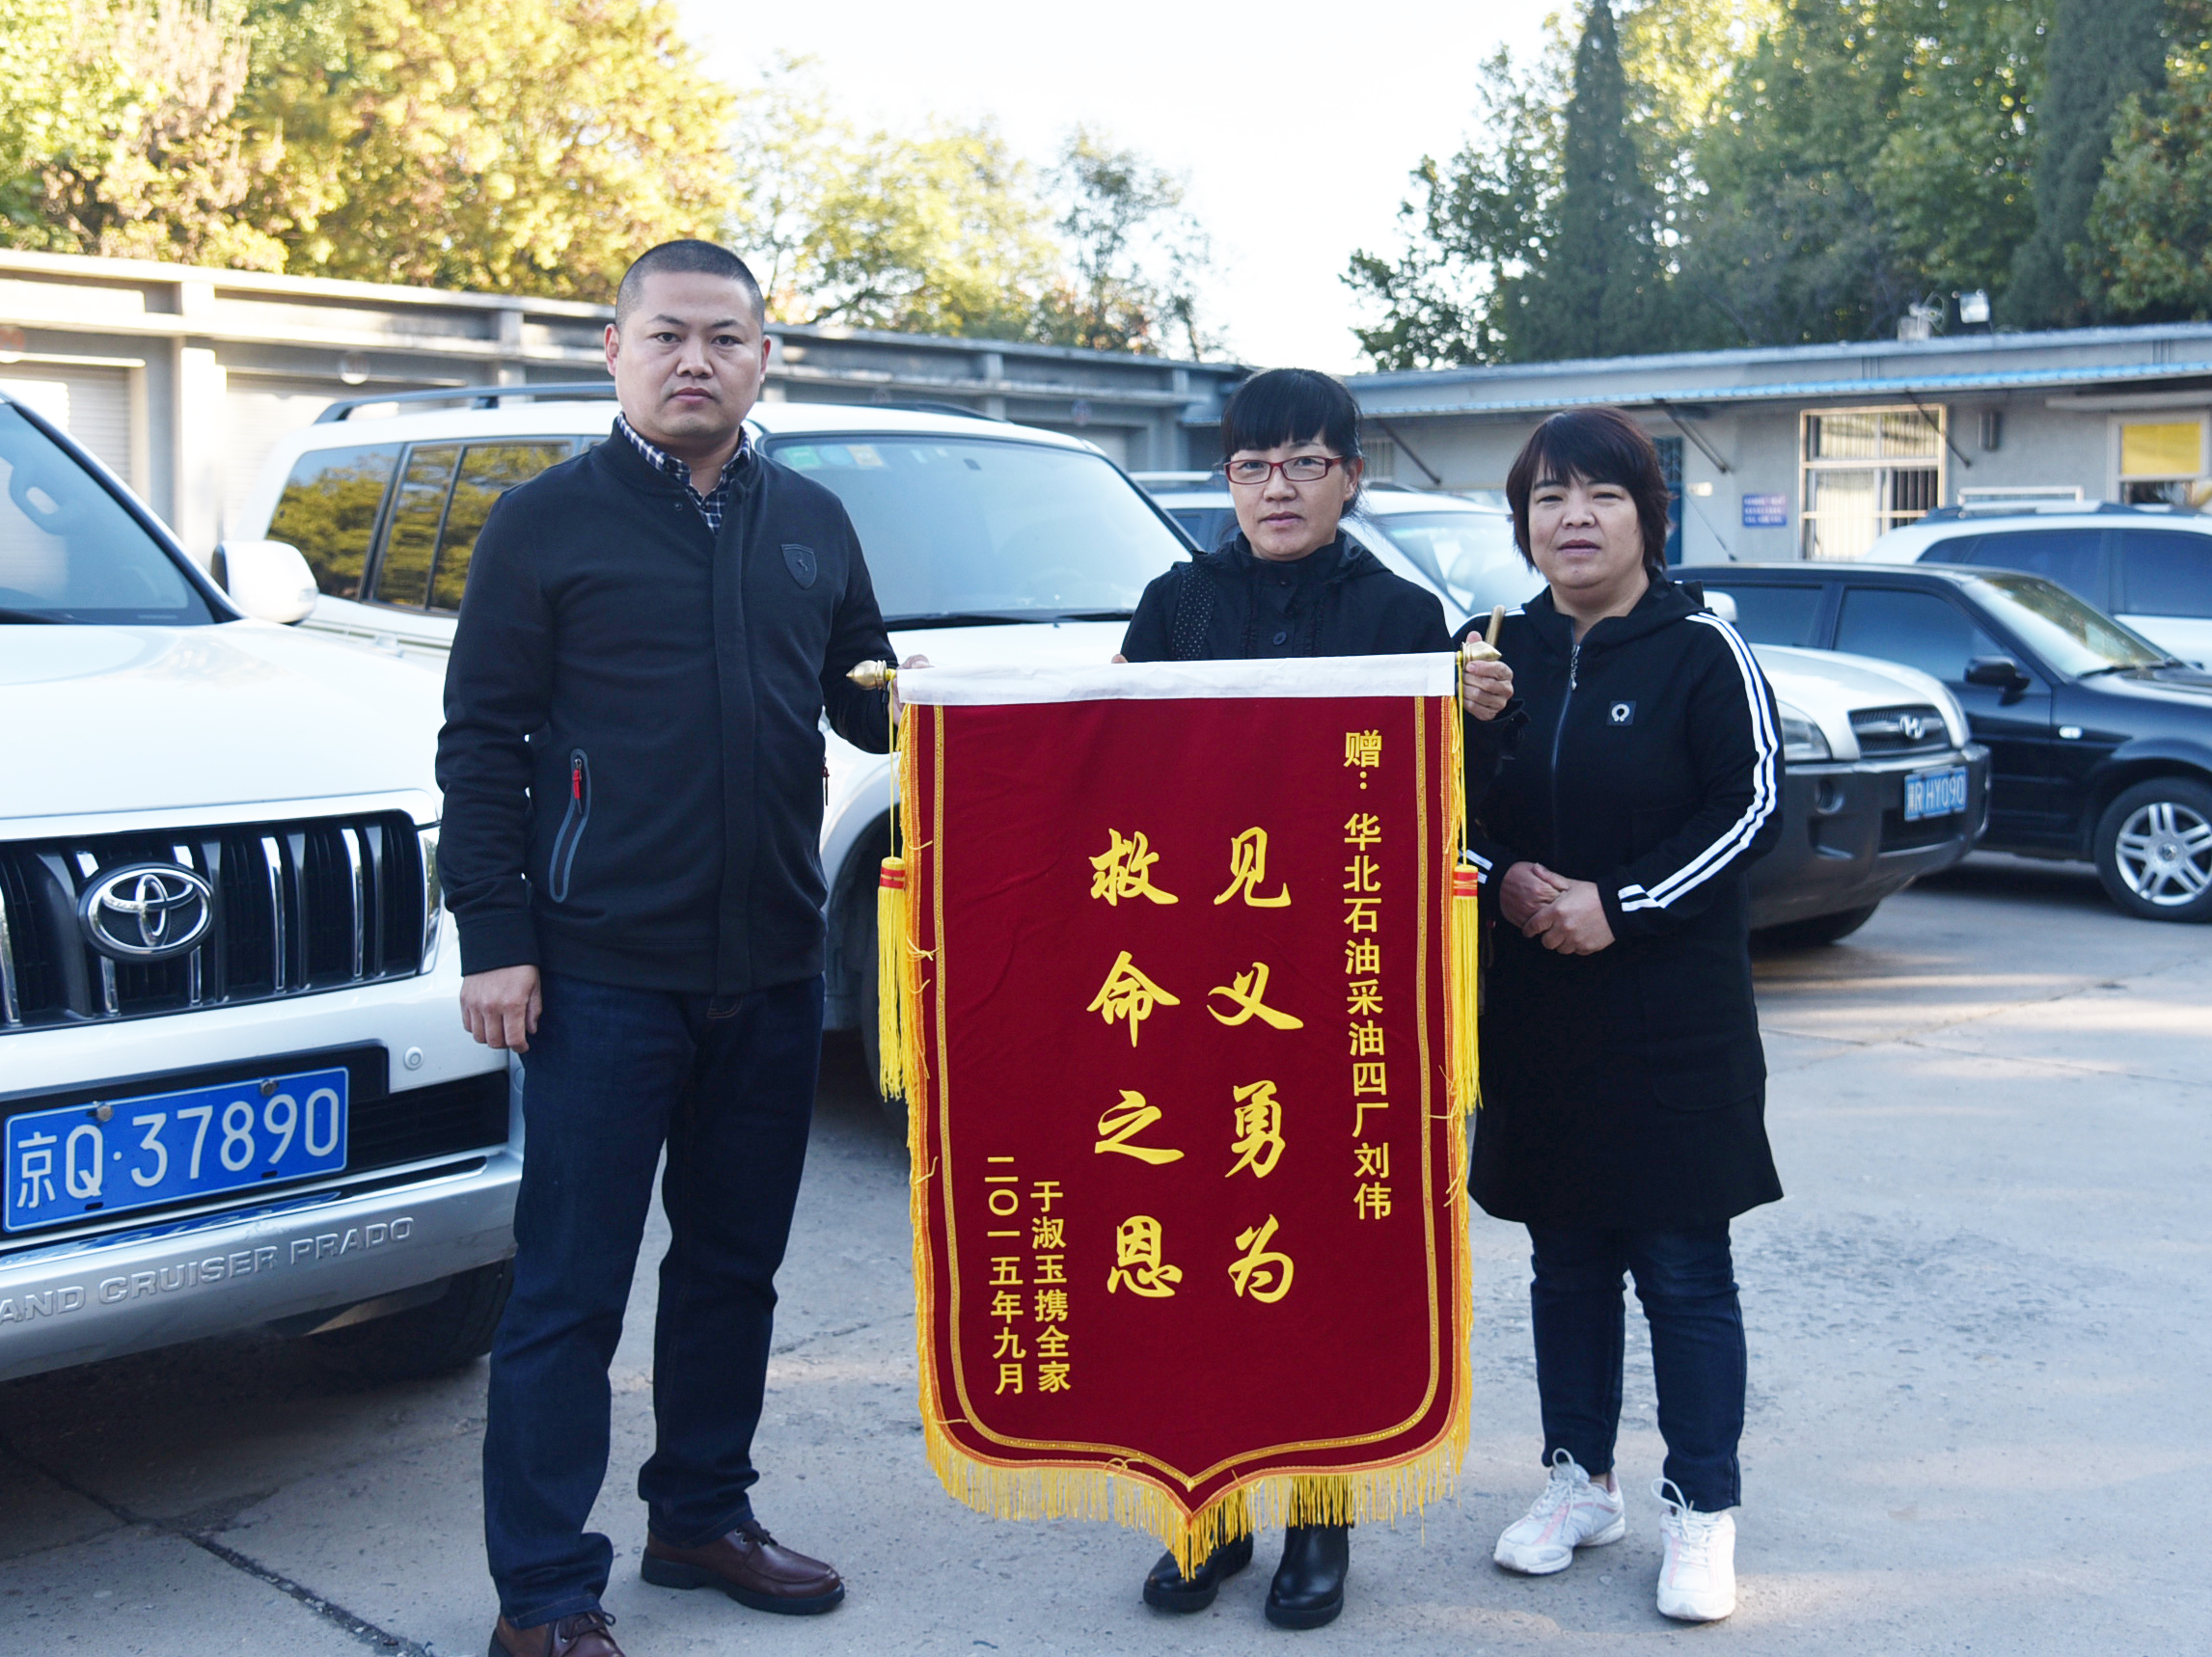 被救老人的家人送来锦旗表示对刘伟（左）的谢意。.JPG